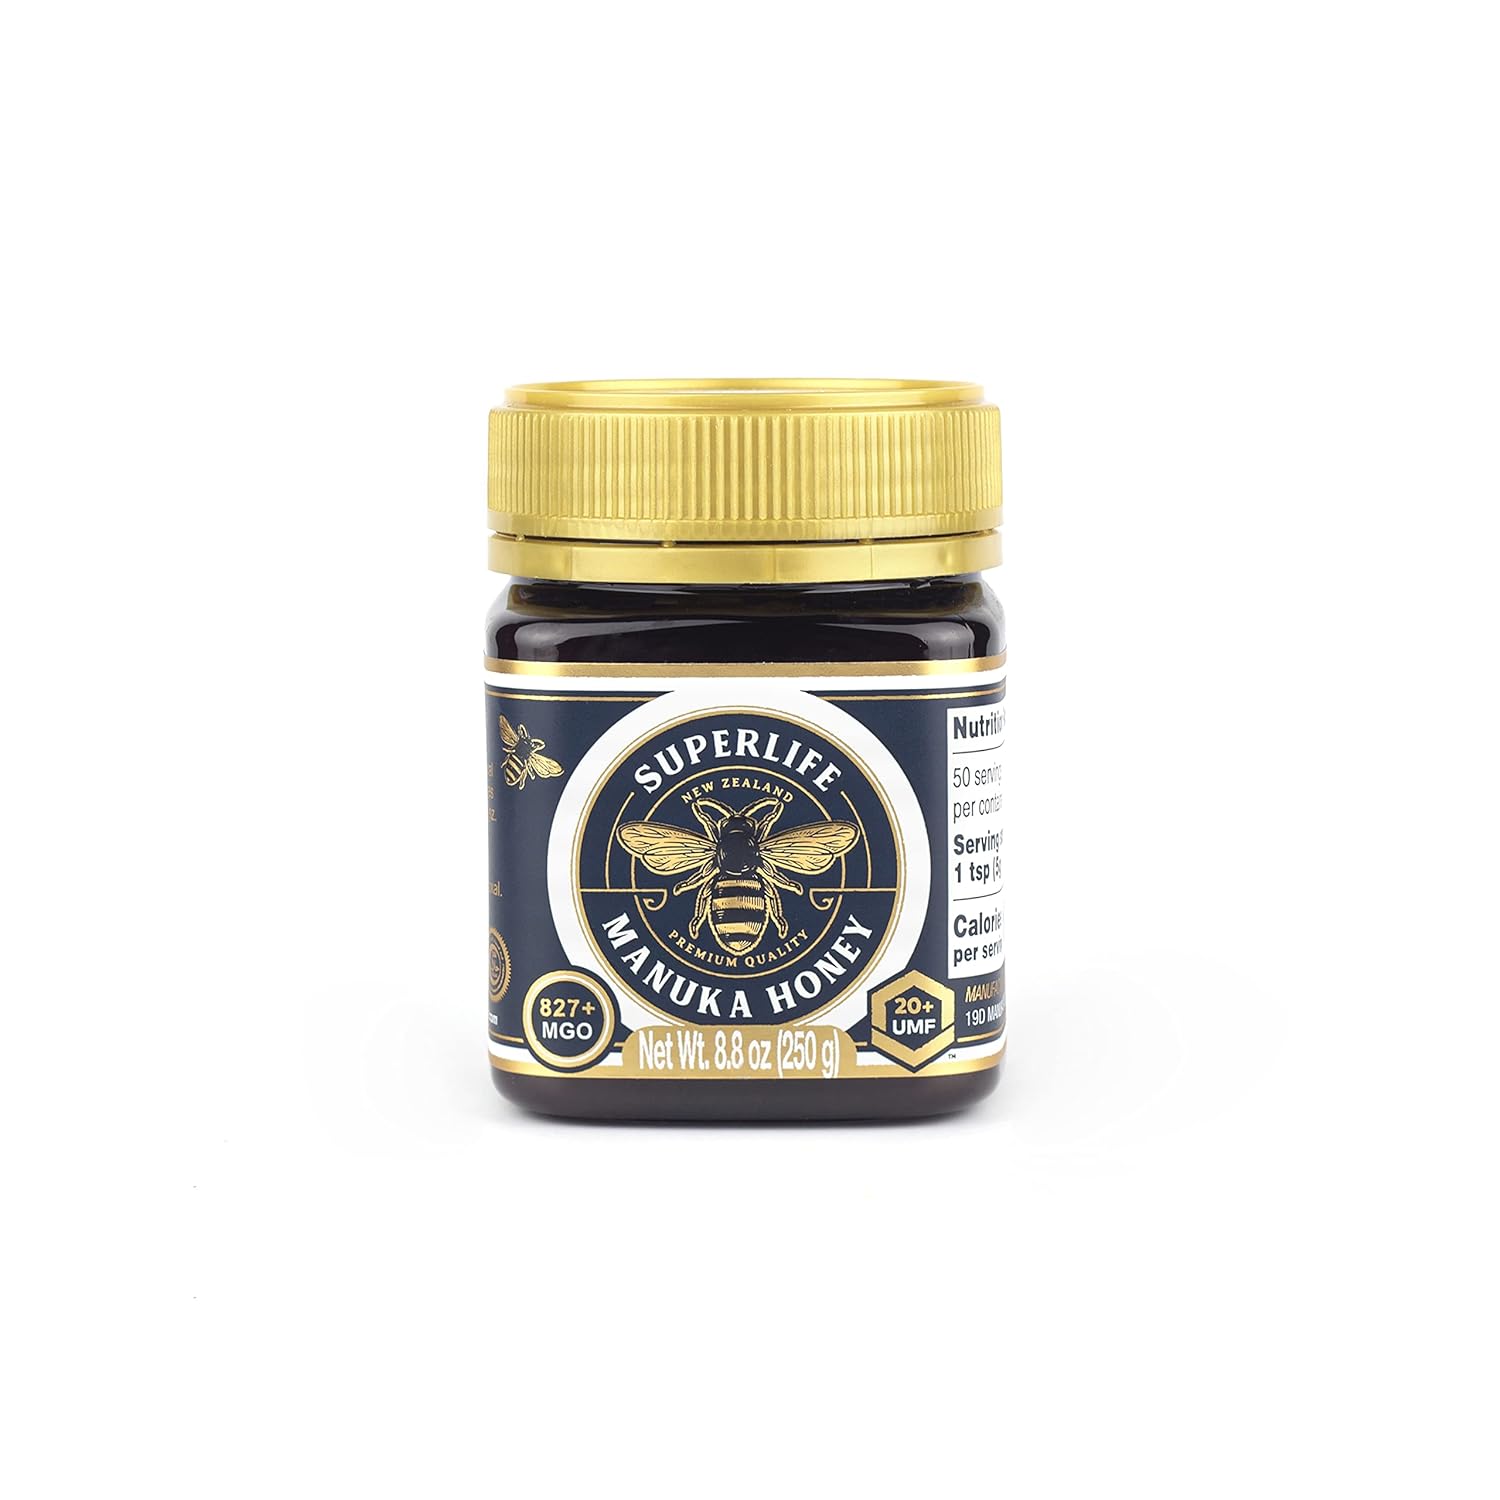 Superlife - Manuka Honey MGO 829+ (UMF 20+) 250g, Raw Honey, Pure & Unpasteurised Monofloral New Zealand Honey